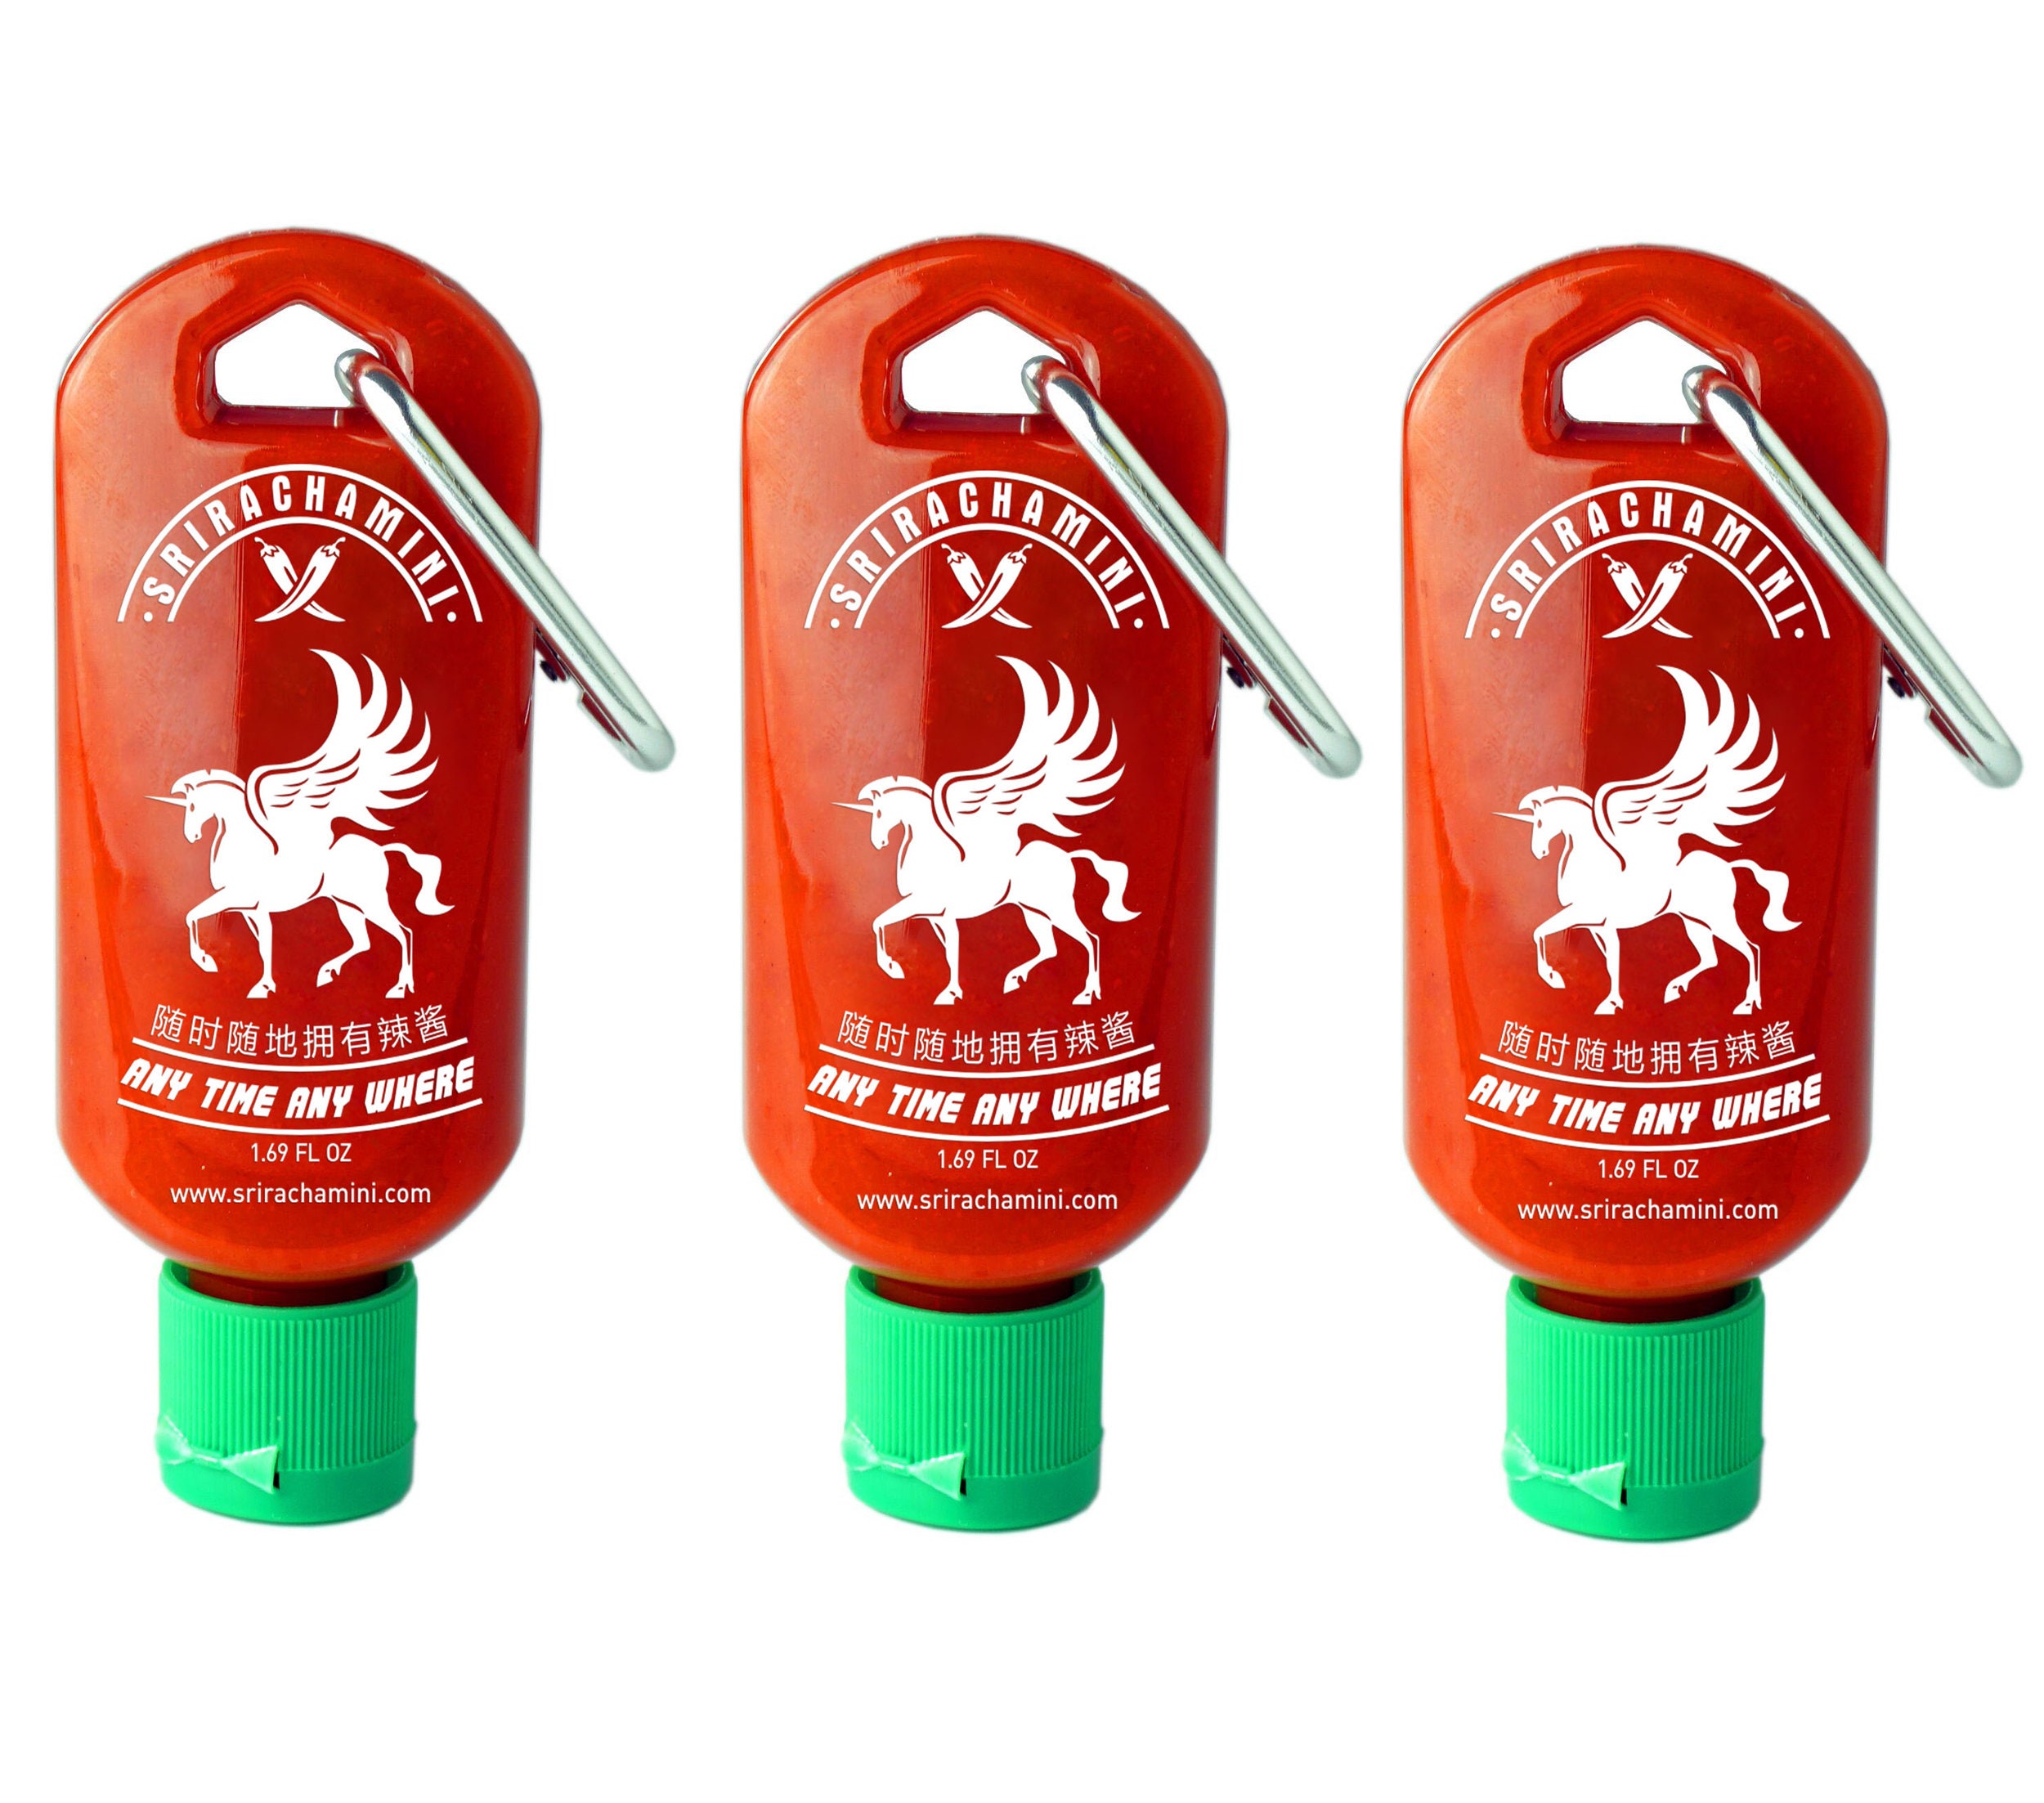 Mini Animal Sauce Bottles